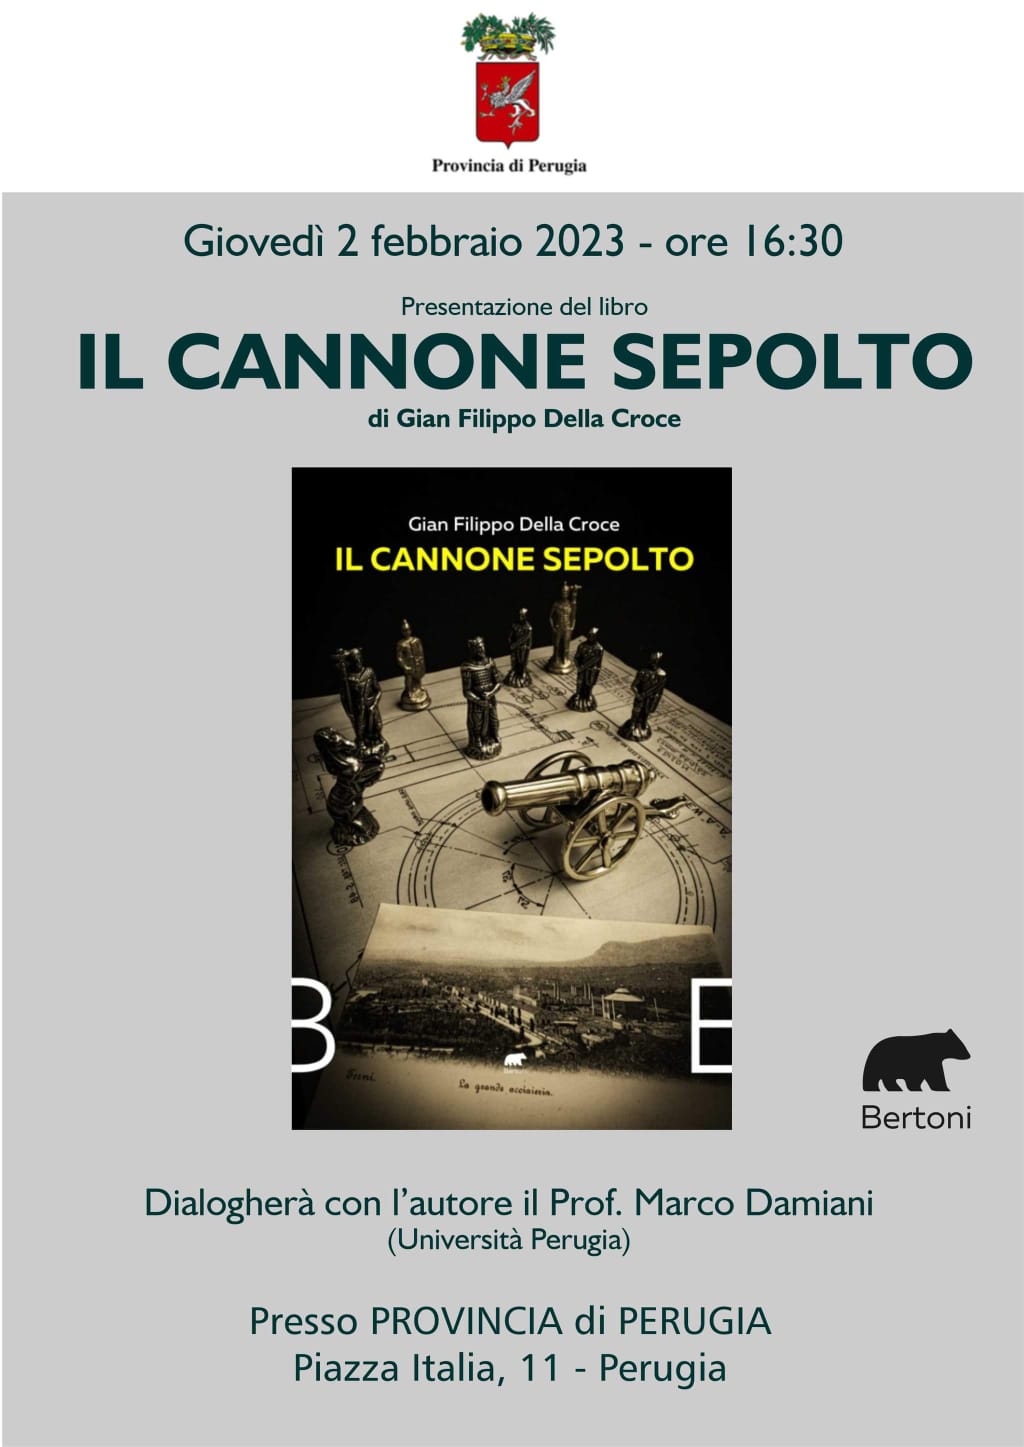 Cultura – Il romanzo “Il cannone sepolto” di Gian Filippo Della Croce verrà presentato  giovedì 2 febbraio